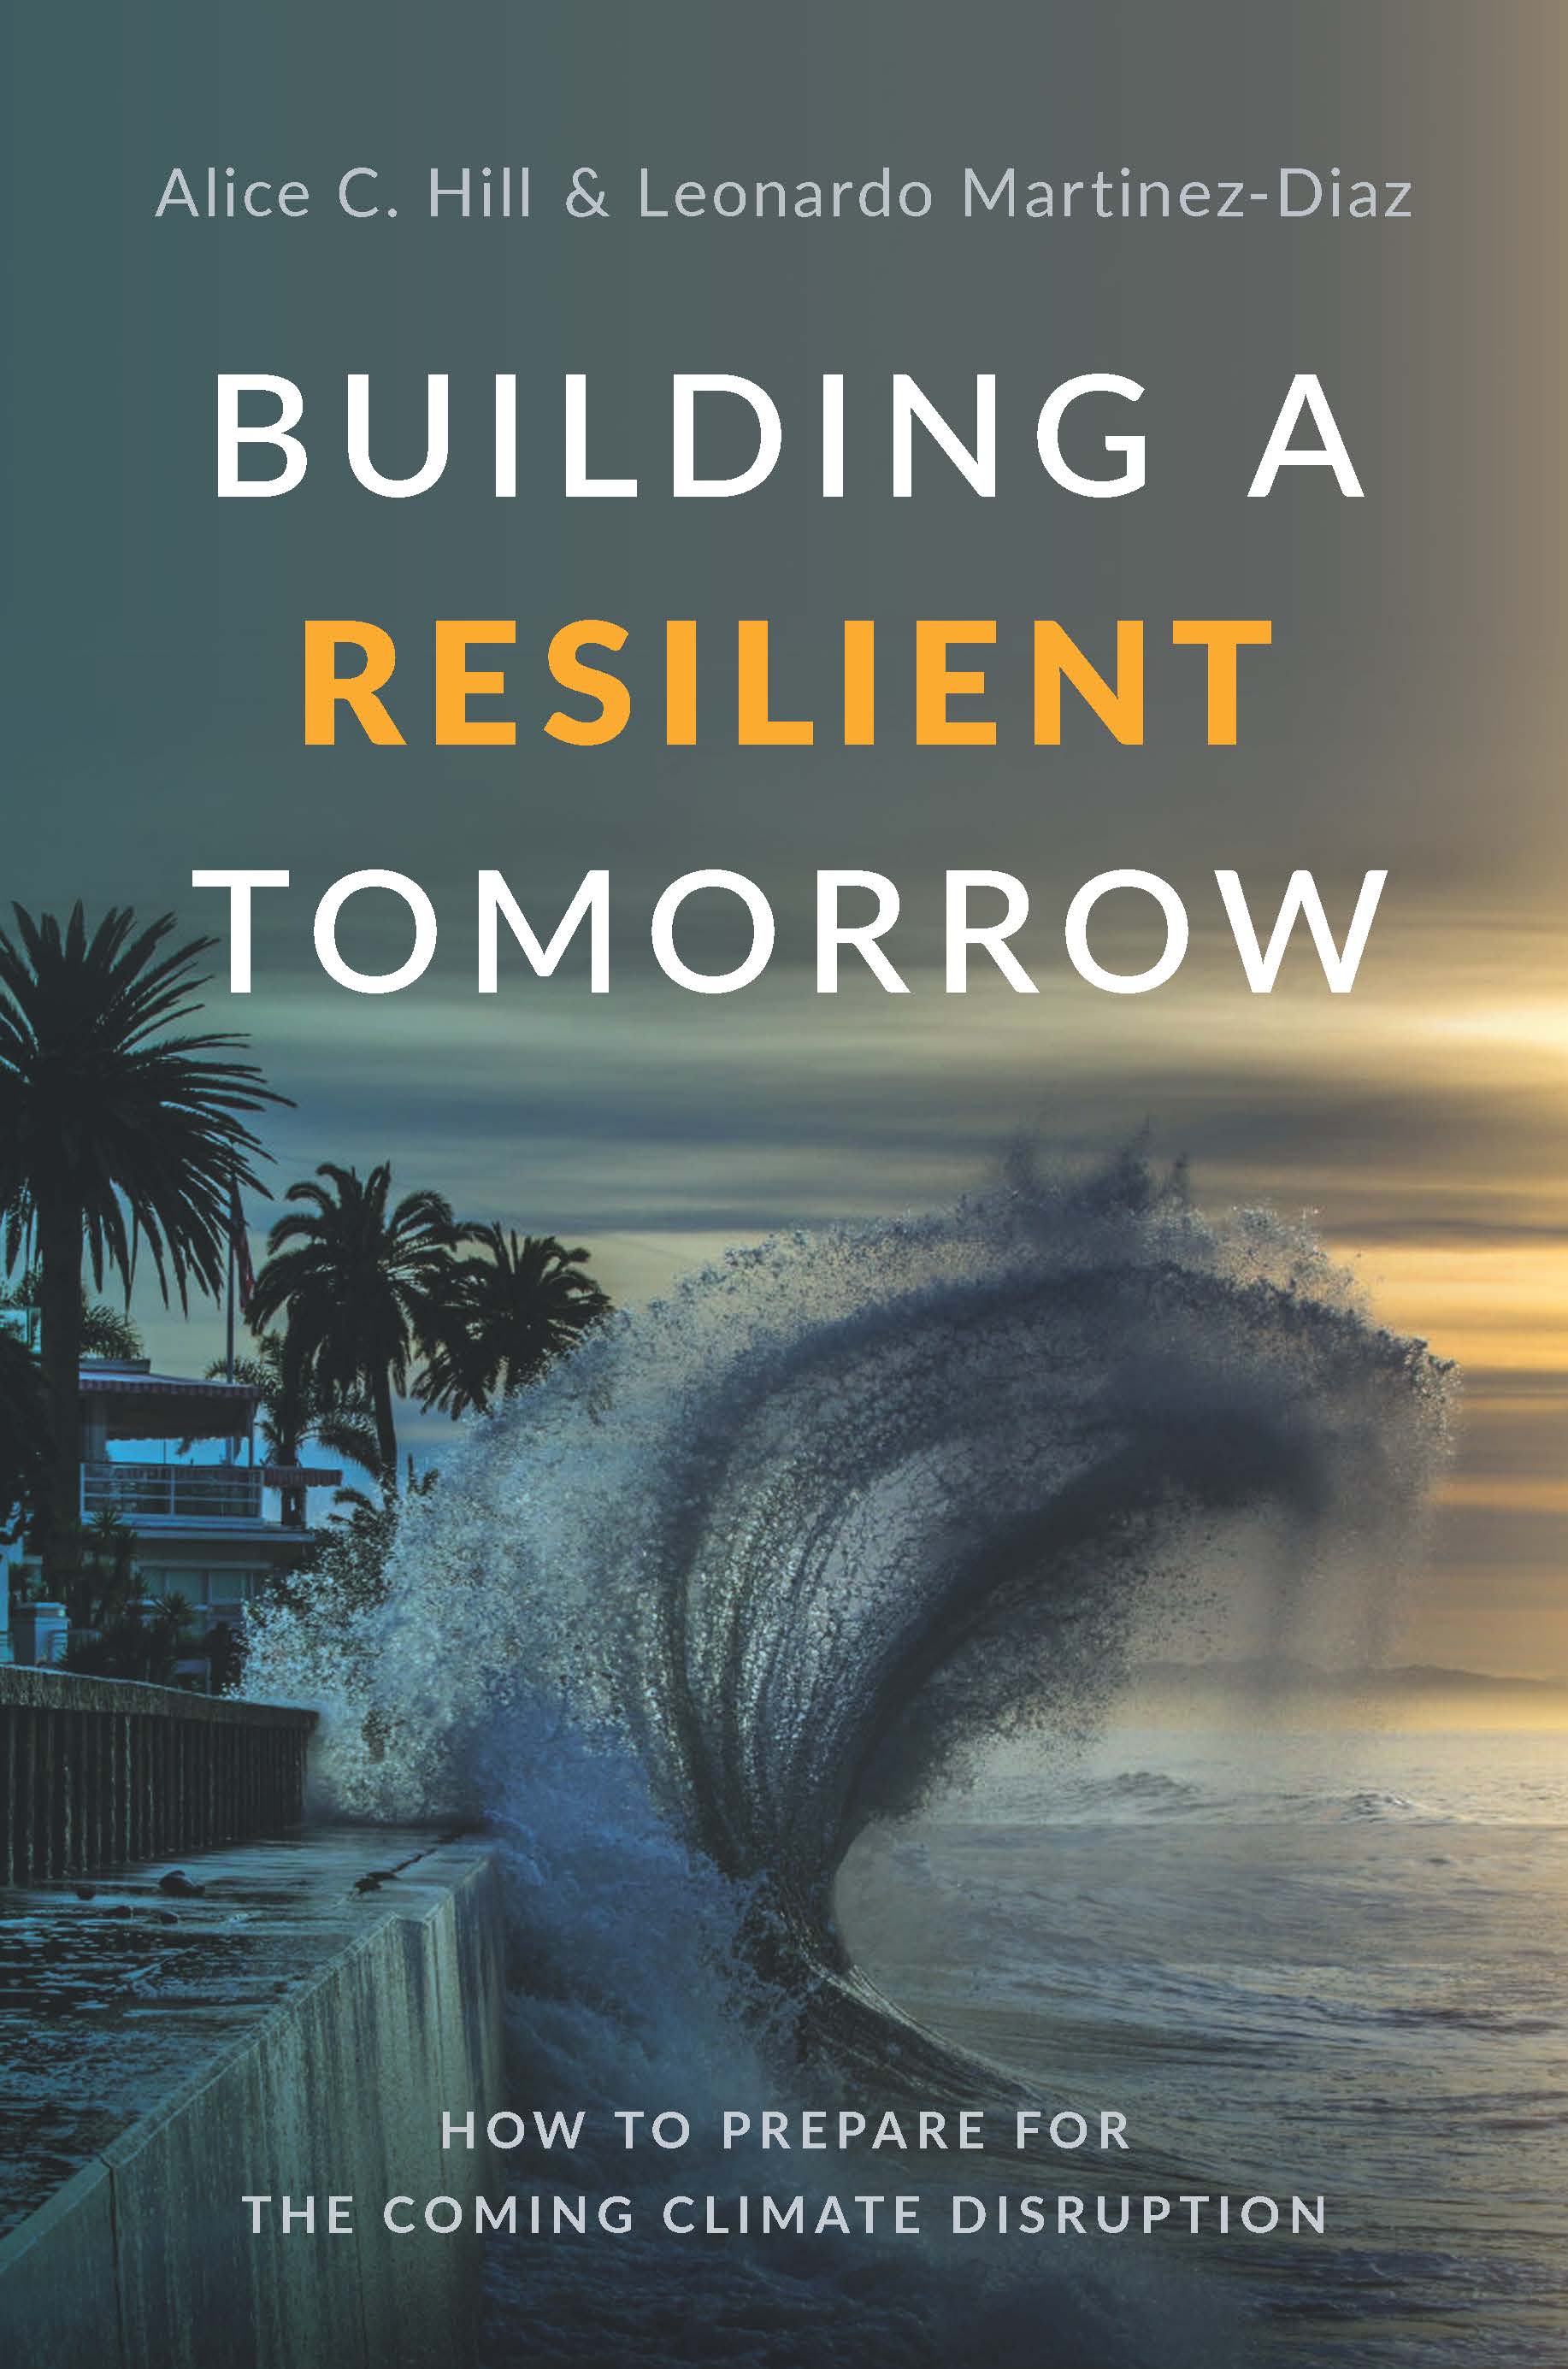 图书涵盖了建筑的弹性明天：如何准备由Alice C.山和莱昂纳多·马丁内斯·迪亚兹在即将气候破坏